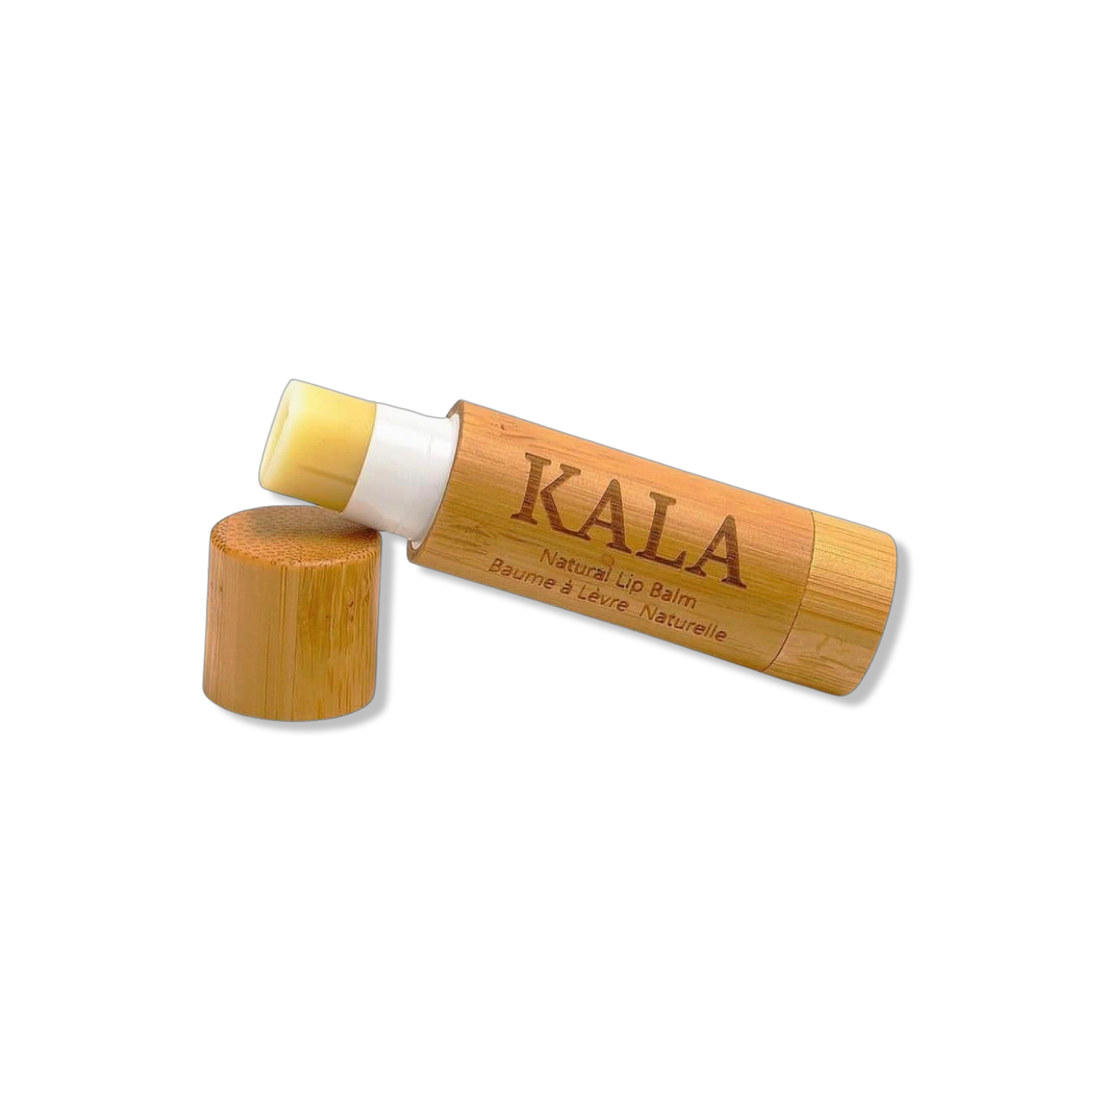 Kala Beauty Lip Balm